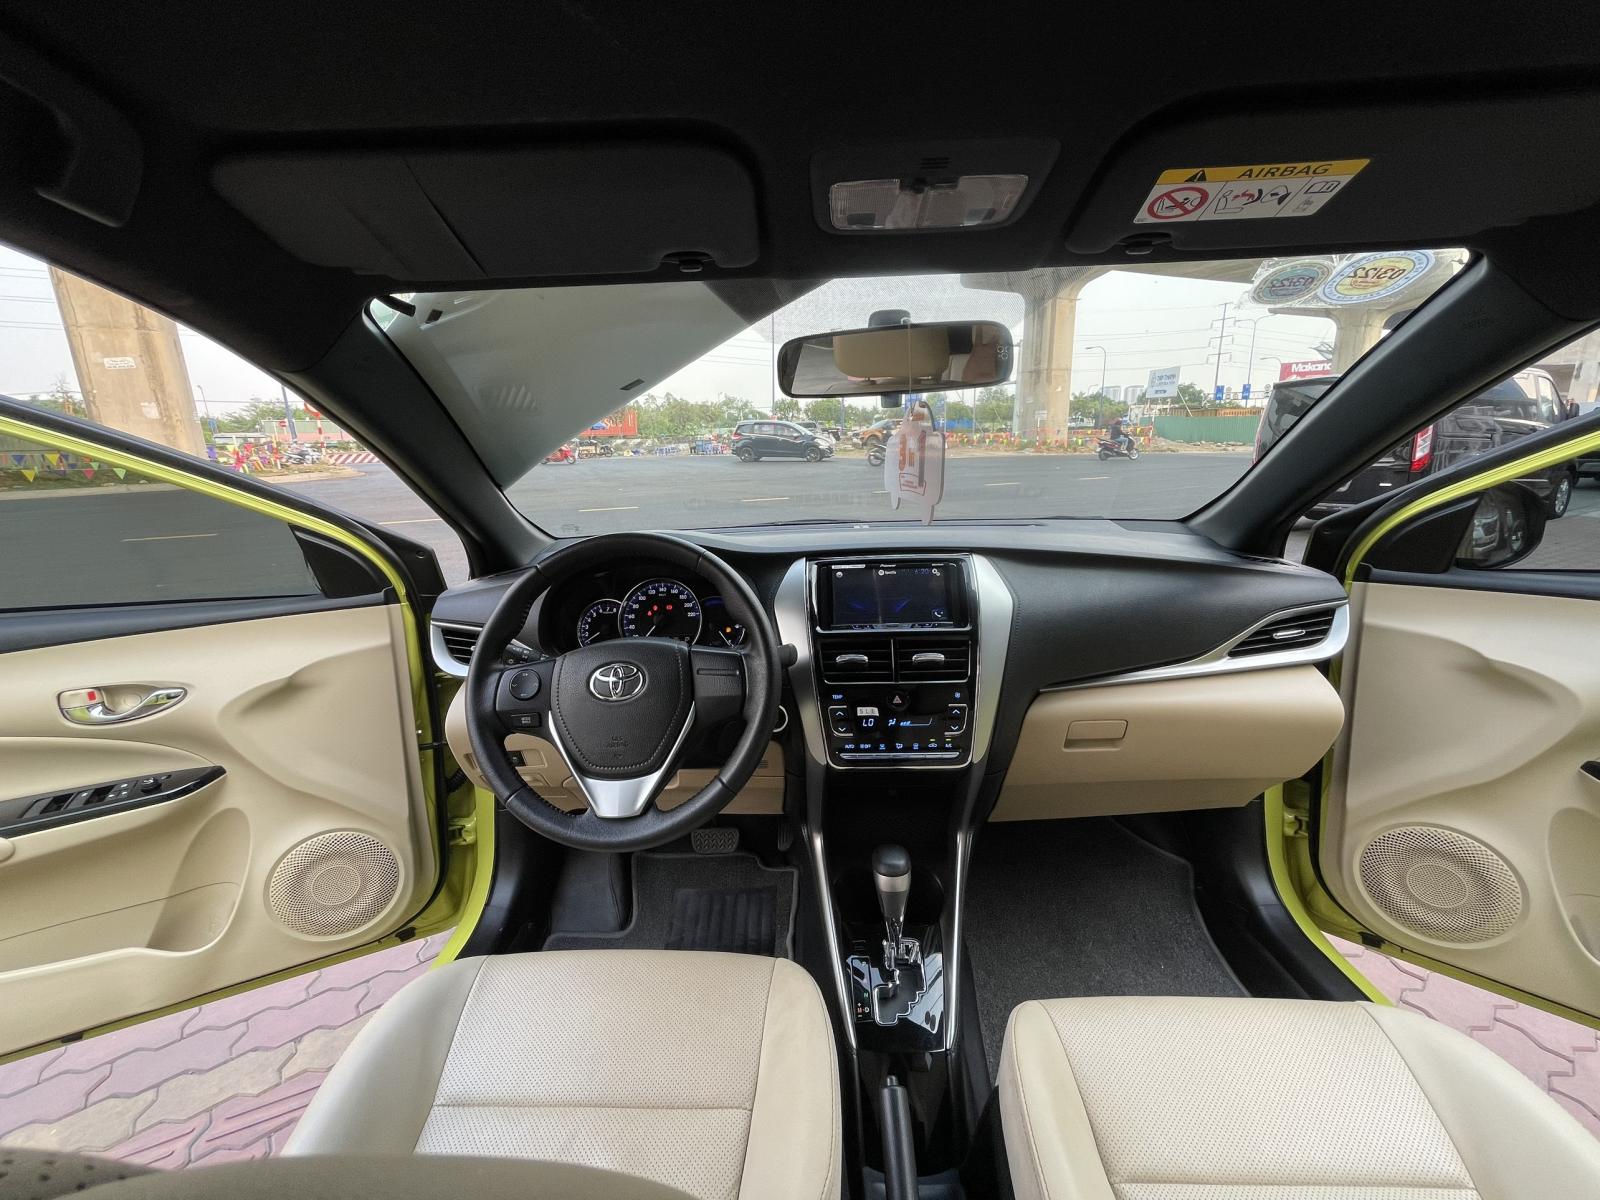 Toyota Yaris 2019 - Cần bán gấp Toyota Yaris 1.5G đời 2019, màu vàng đẹp rực rỡ, xe biển SG Lướt 19.000km - giá fix đẹp